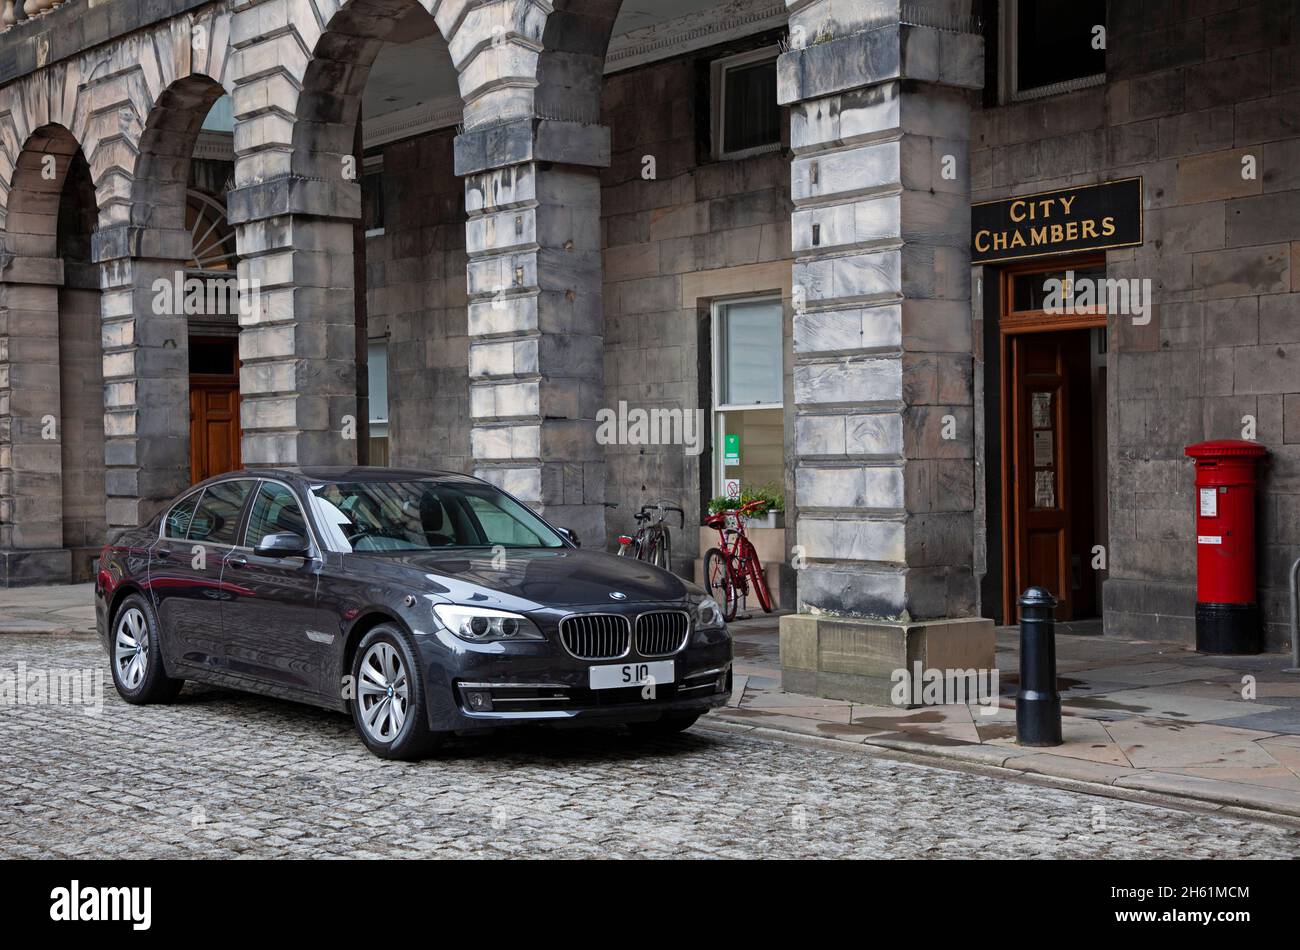 Édimbourg, Écosse, Royaume-Uni.12 novembre 2021.Lord Provost, le grand véhicule BMW d'Édimbourg, à l'entrée des chambres de la ville, dans le centre-ville.Crédit : Arch White/Alamy Live News. Banque D'Images